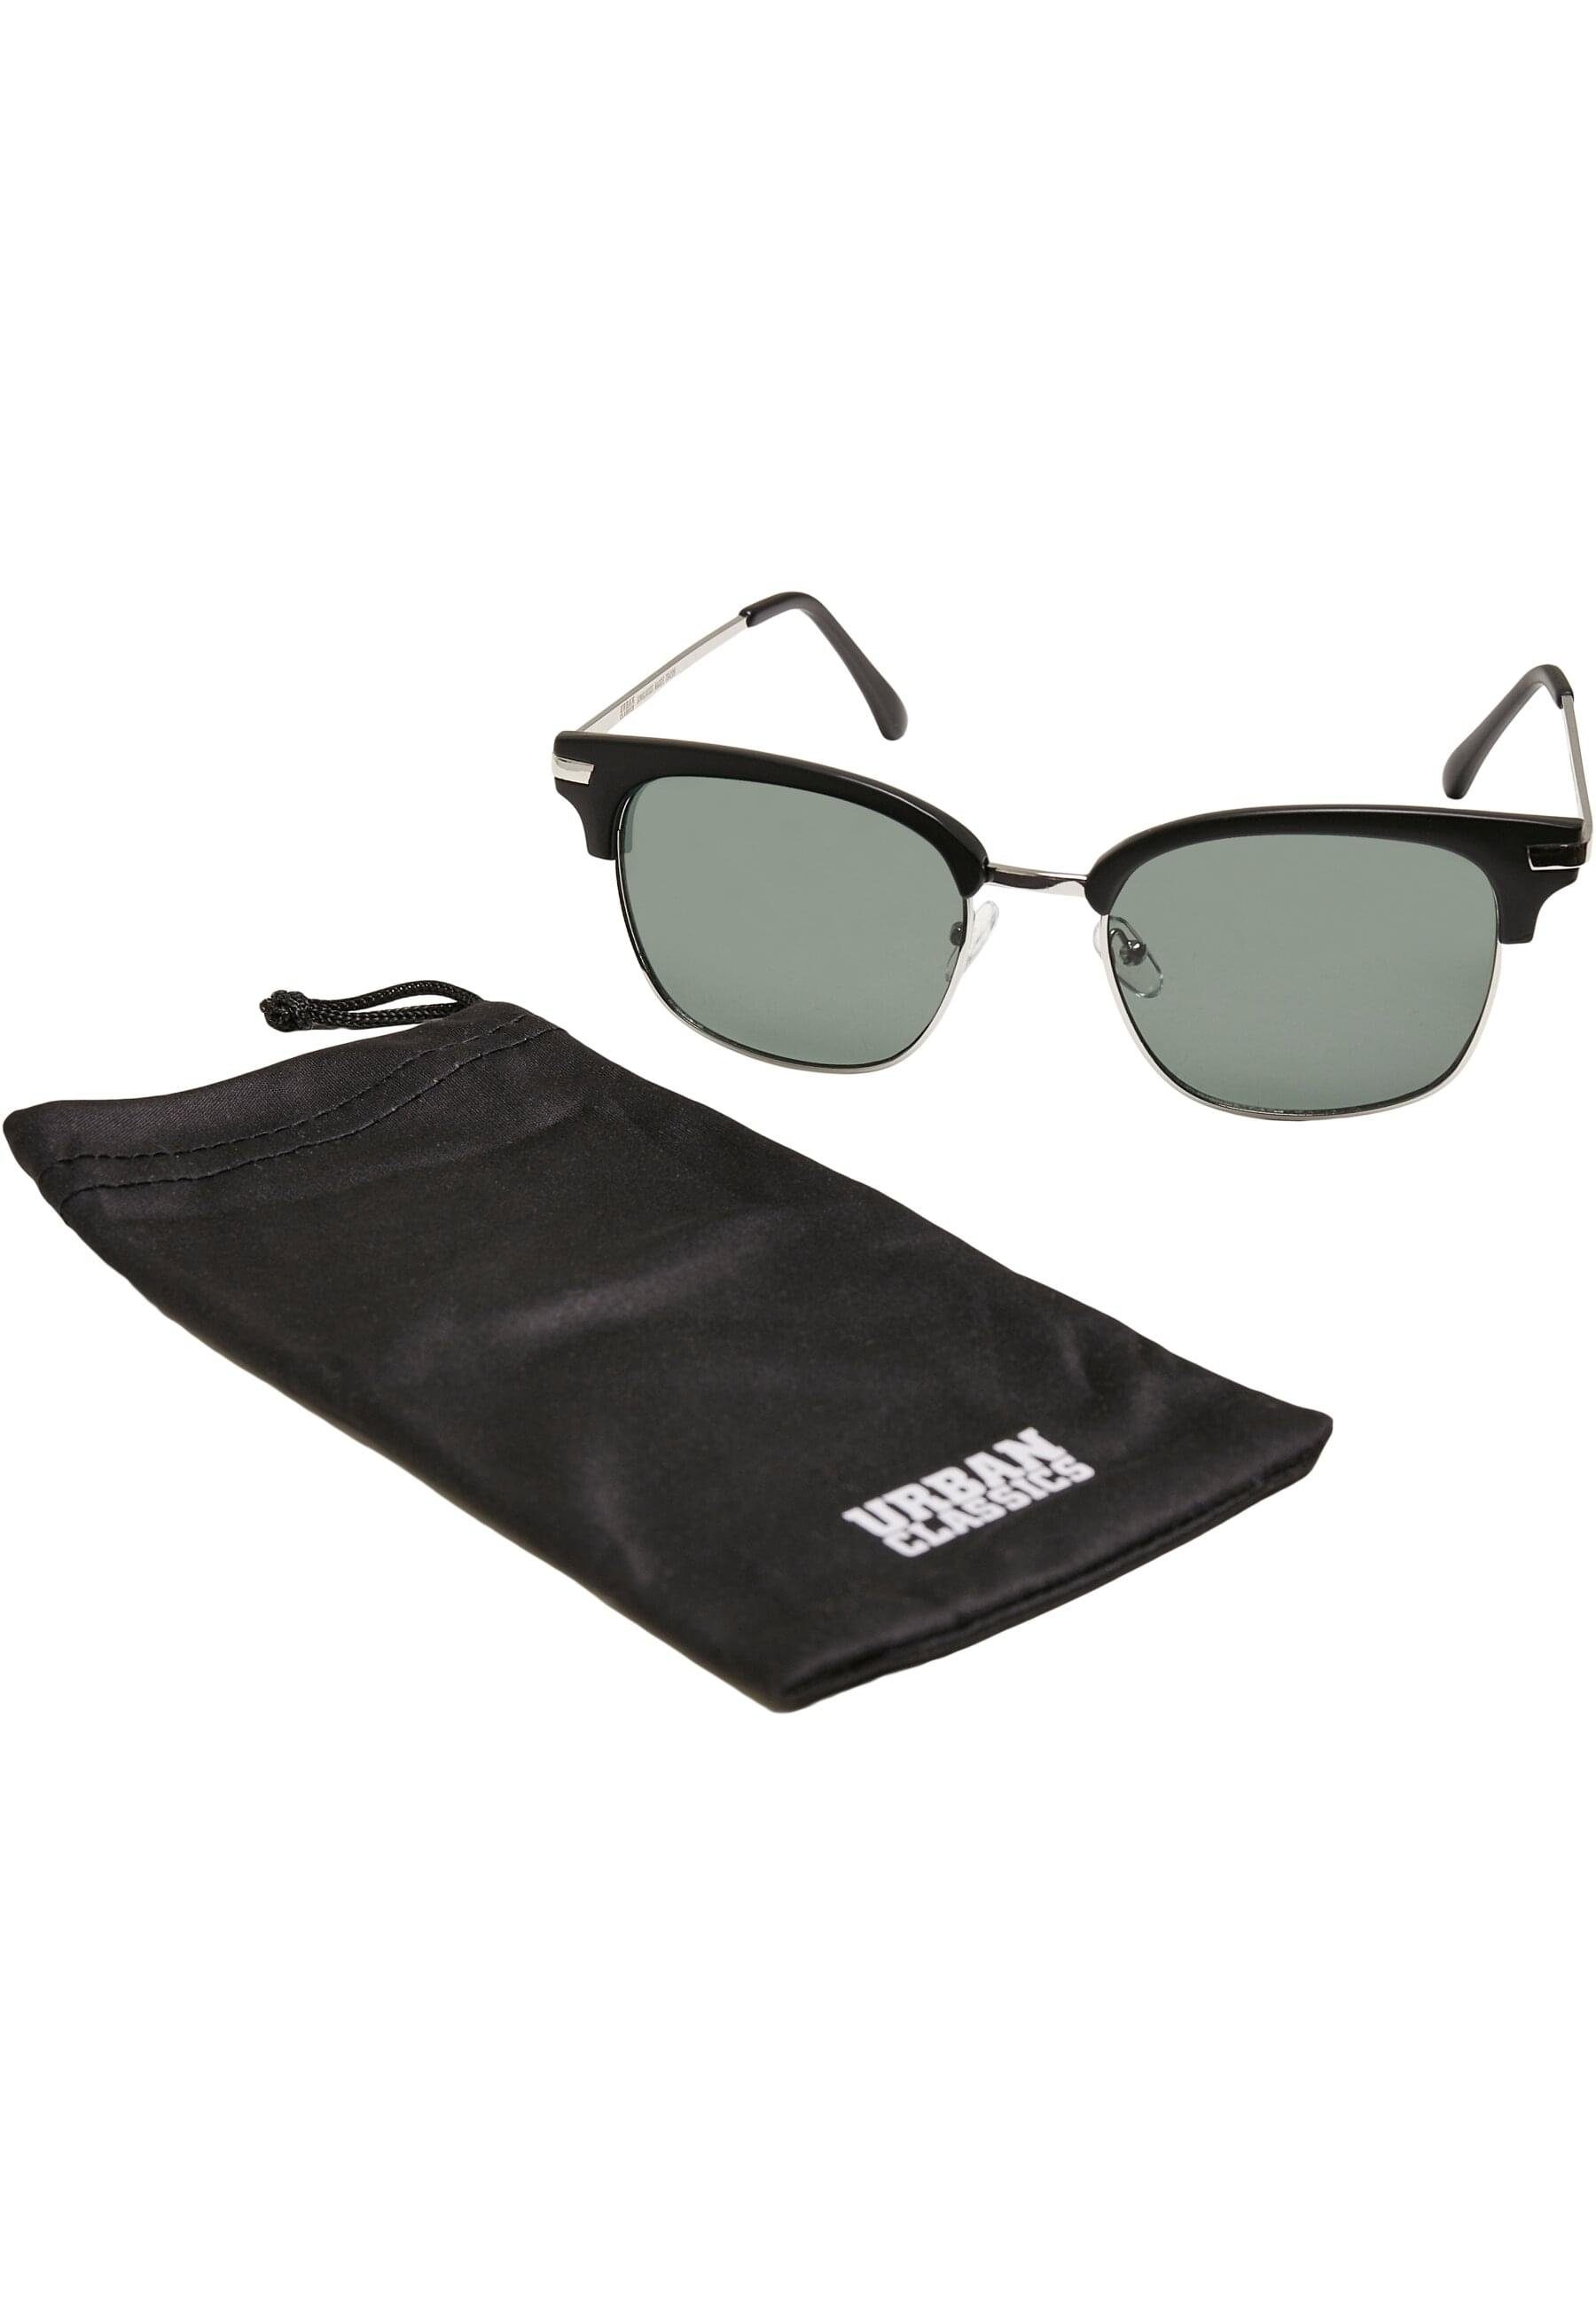 URBAN Sunglasses Crete Unisex Sonnenbrille CLASSICS